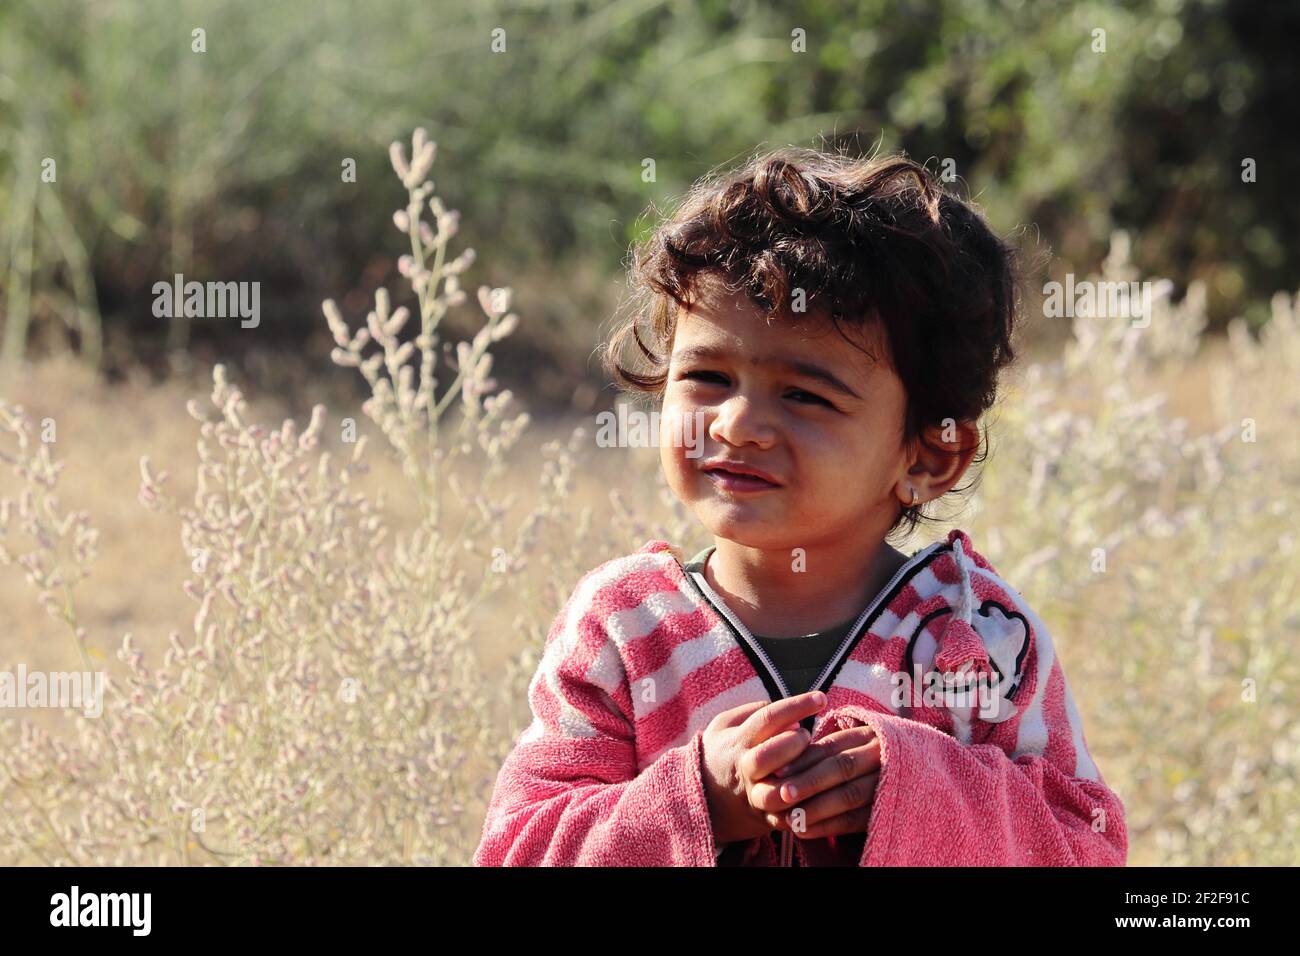 Un niño pequeño de origen indio mirando la cámara con ojos pequeños.concepto para los niños de hoy el futuro de mañana, recuerdos de la infancia, sonrisa en la cara, Foto de stock